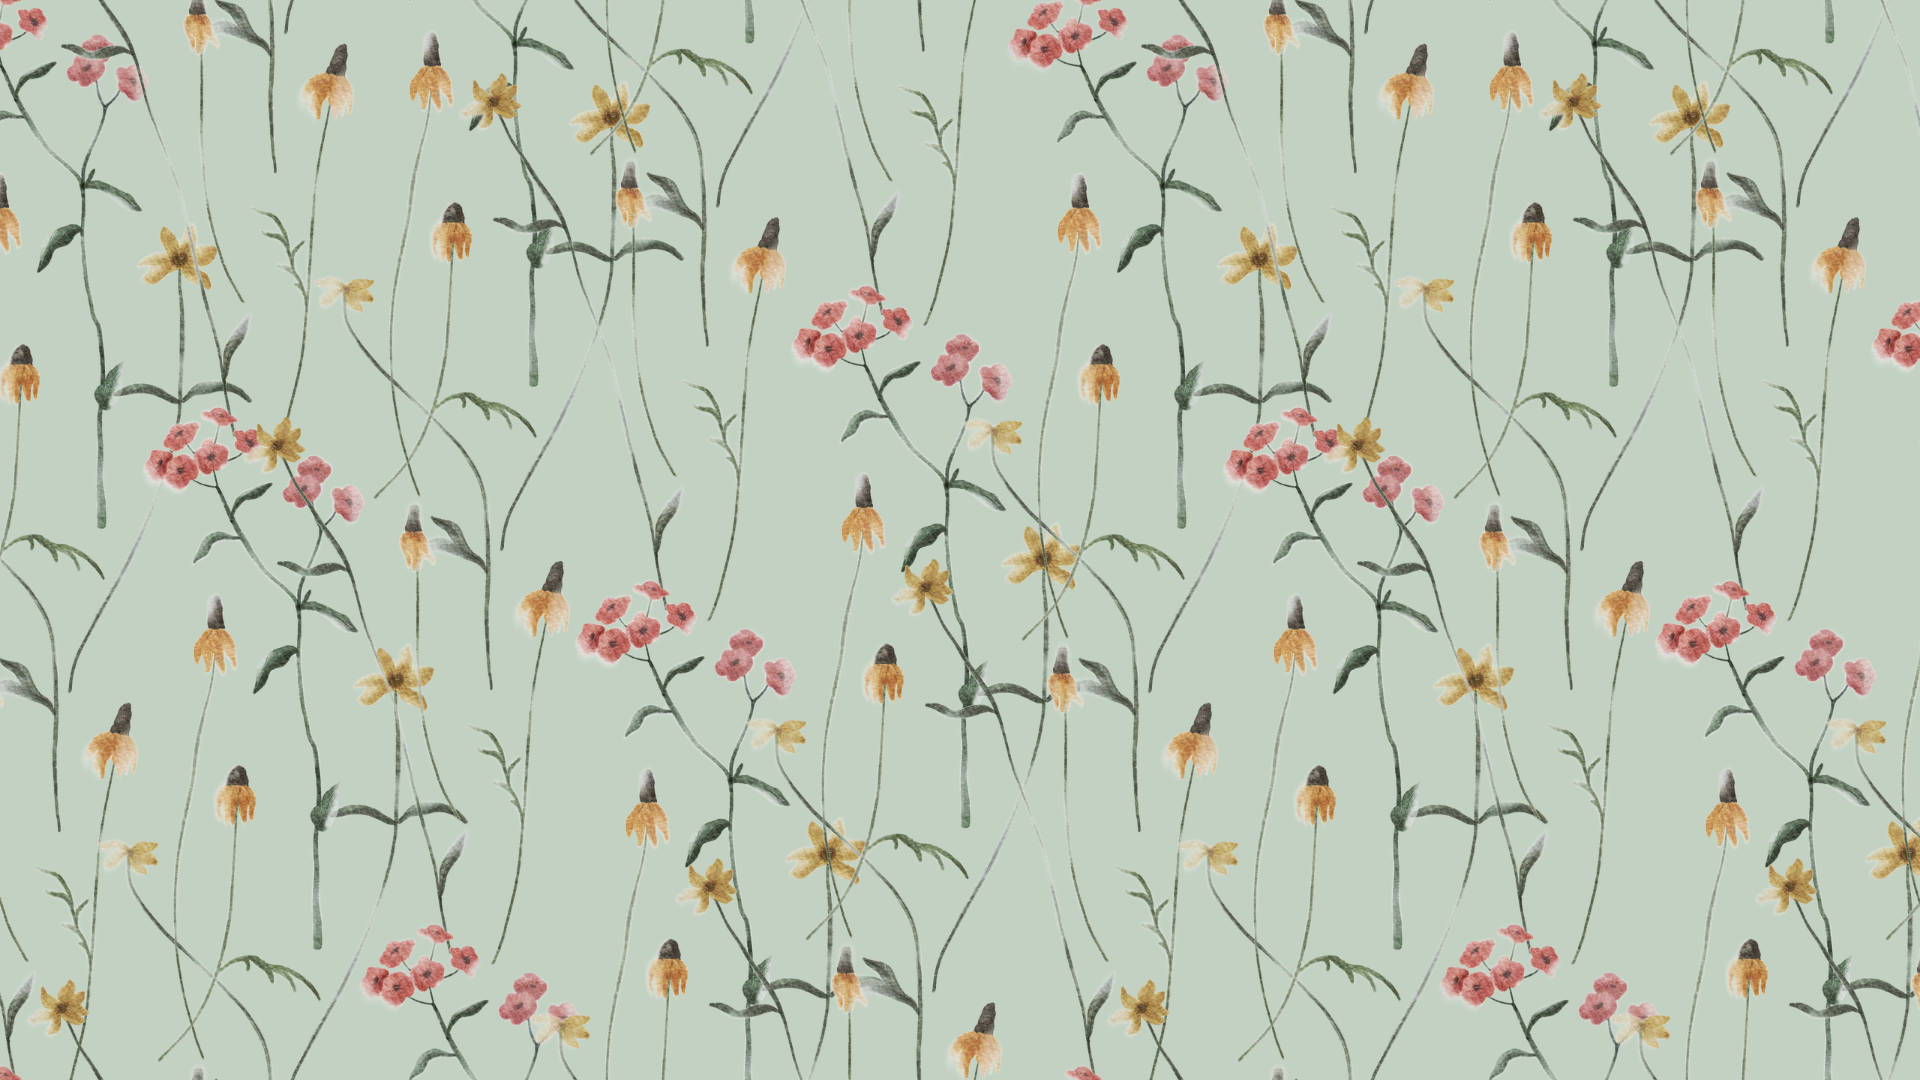 Elegant Flower Sage Green Ink Background Wallpaper Image For Free Download   Pngtree